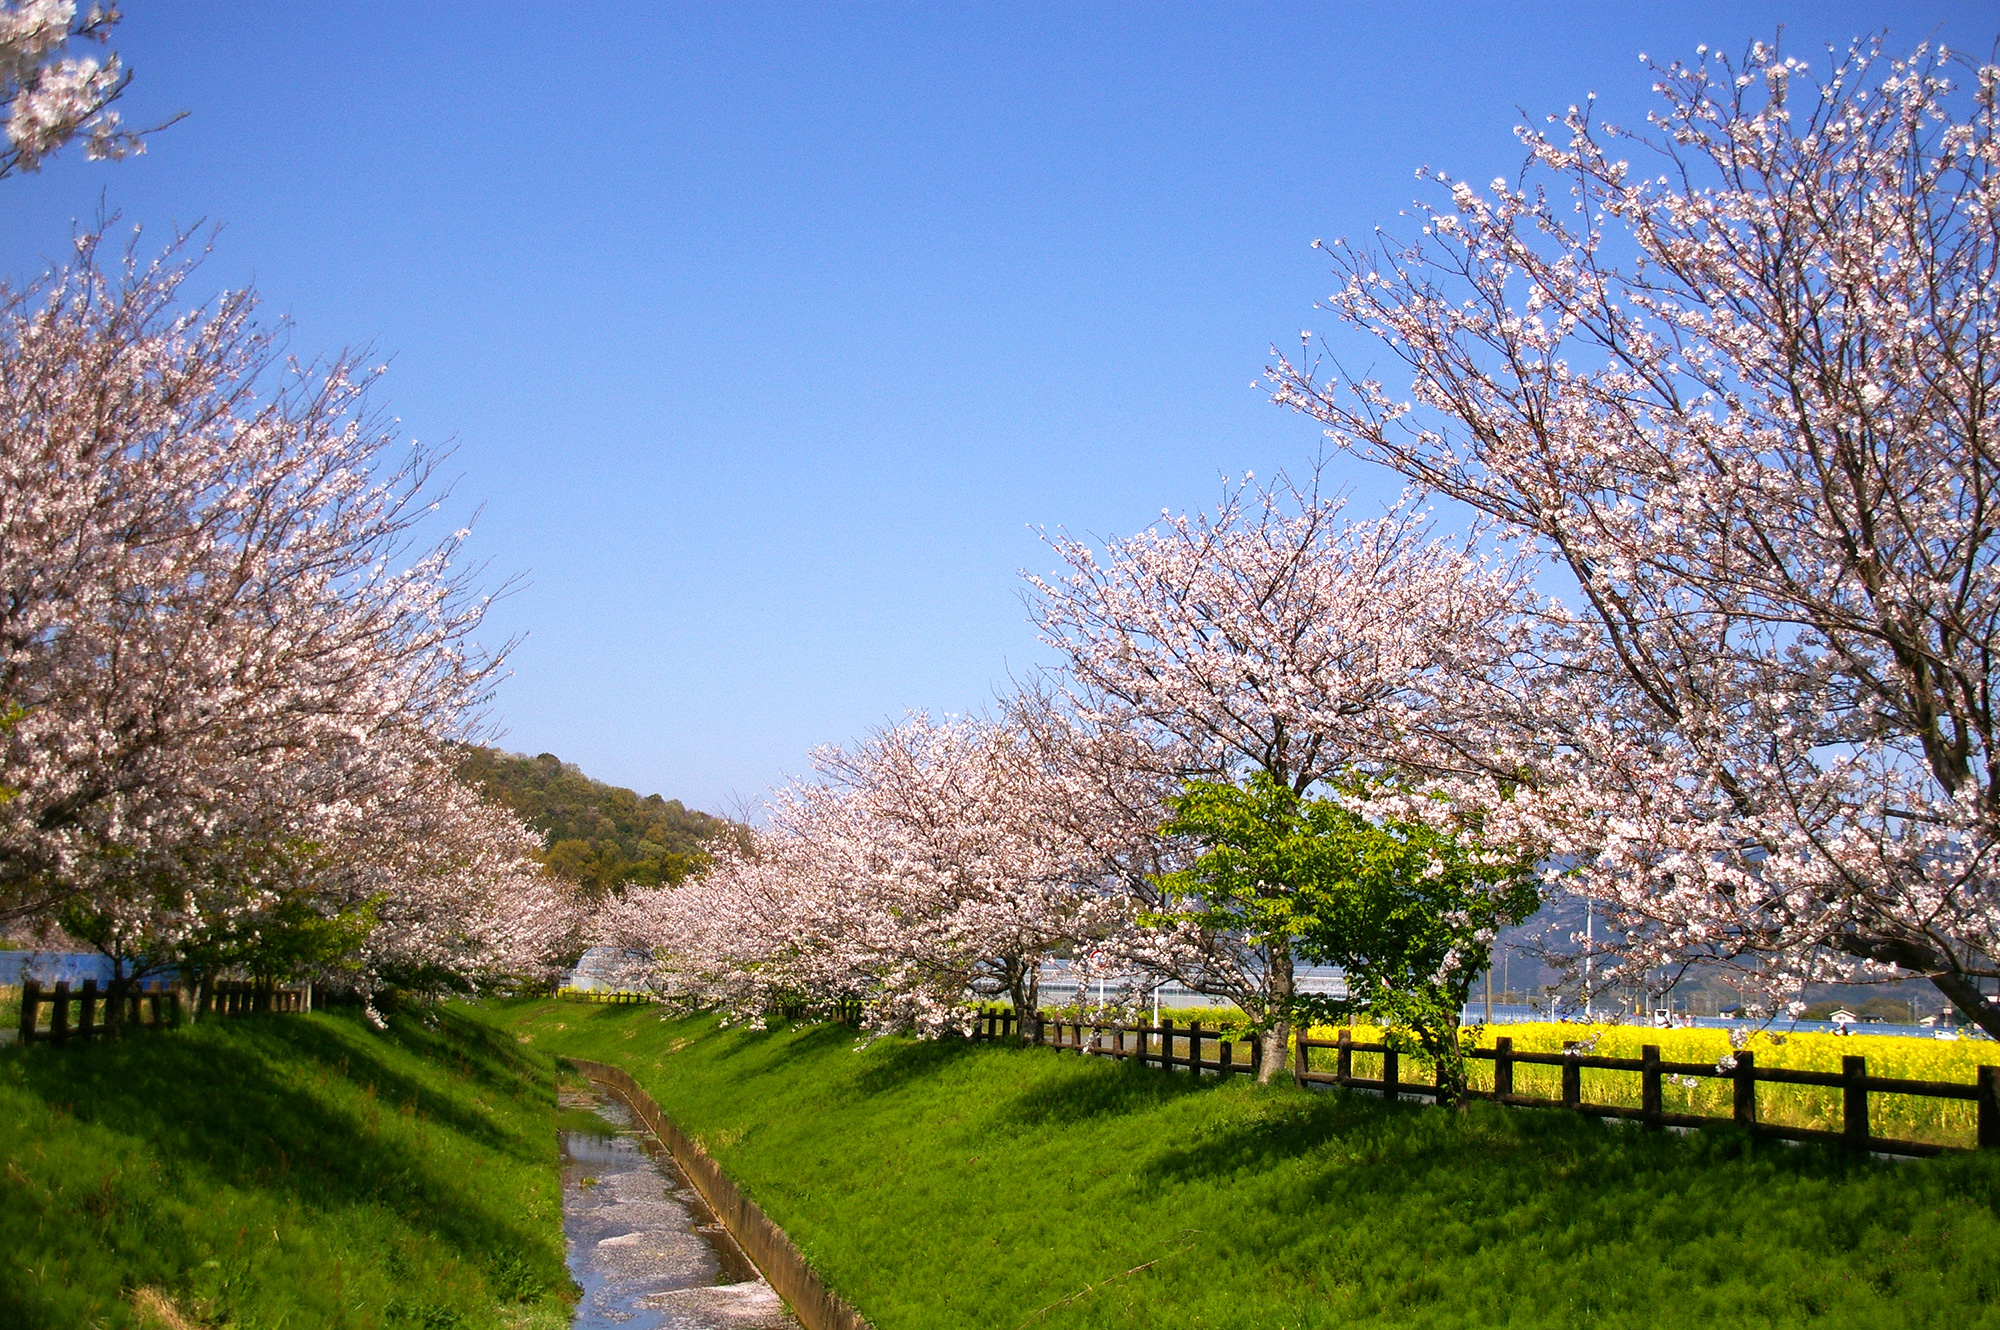 桜並木と水路のフリー画像素材